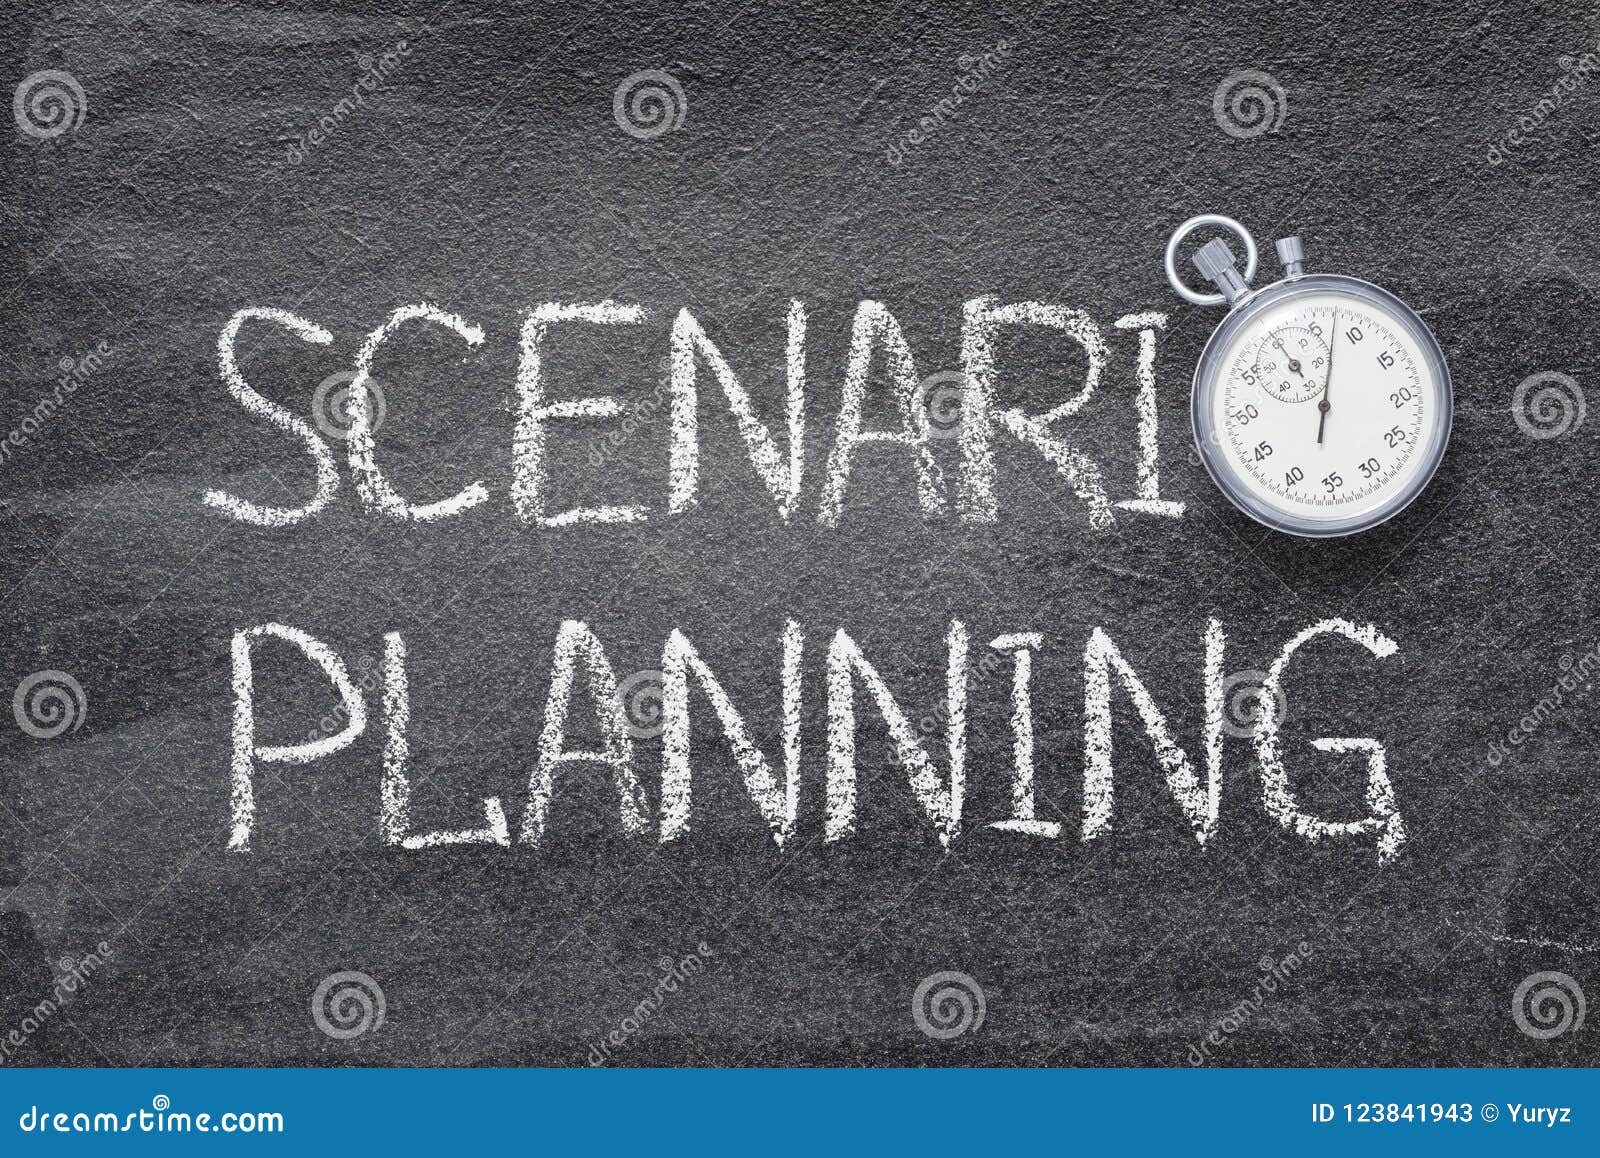 scenario planning watch